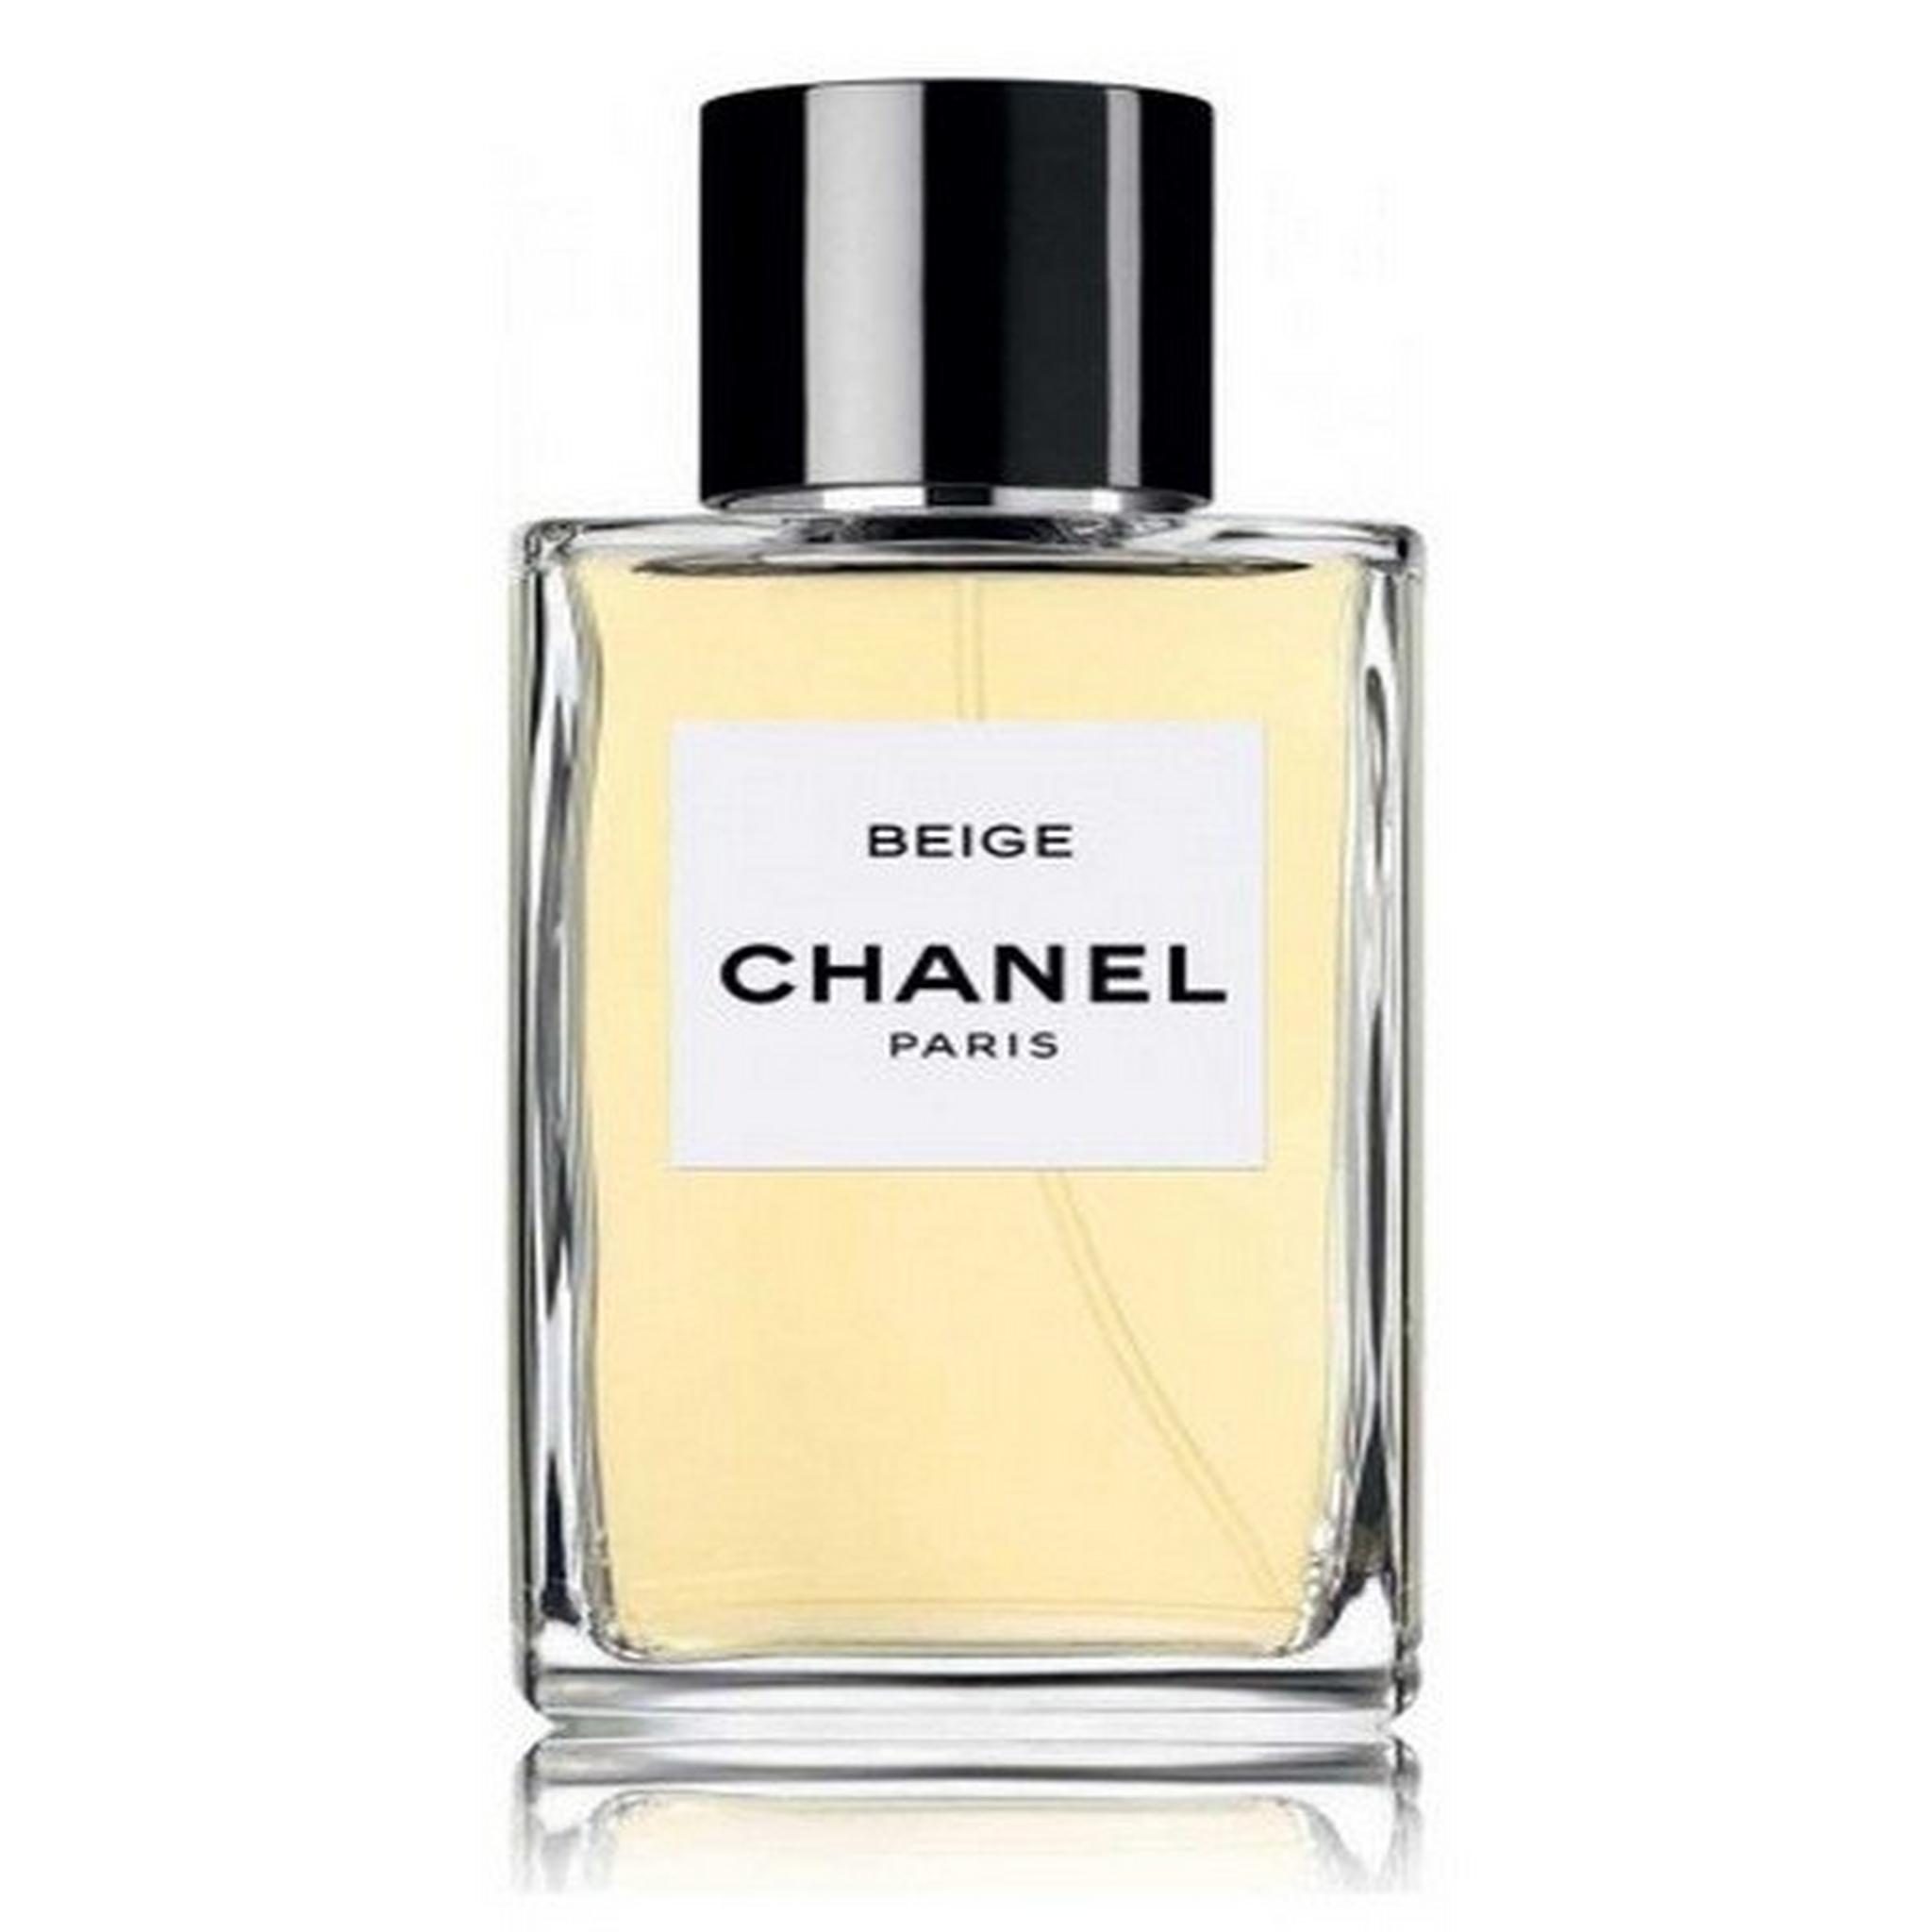 CHANEL Beige - Eau De Parfum 75 ml